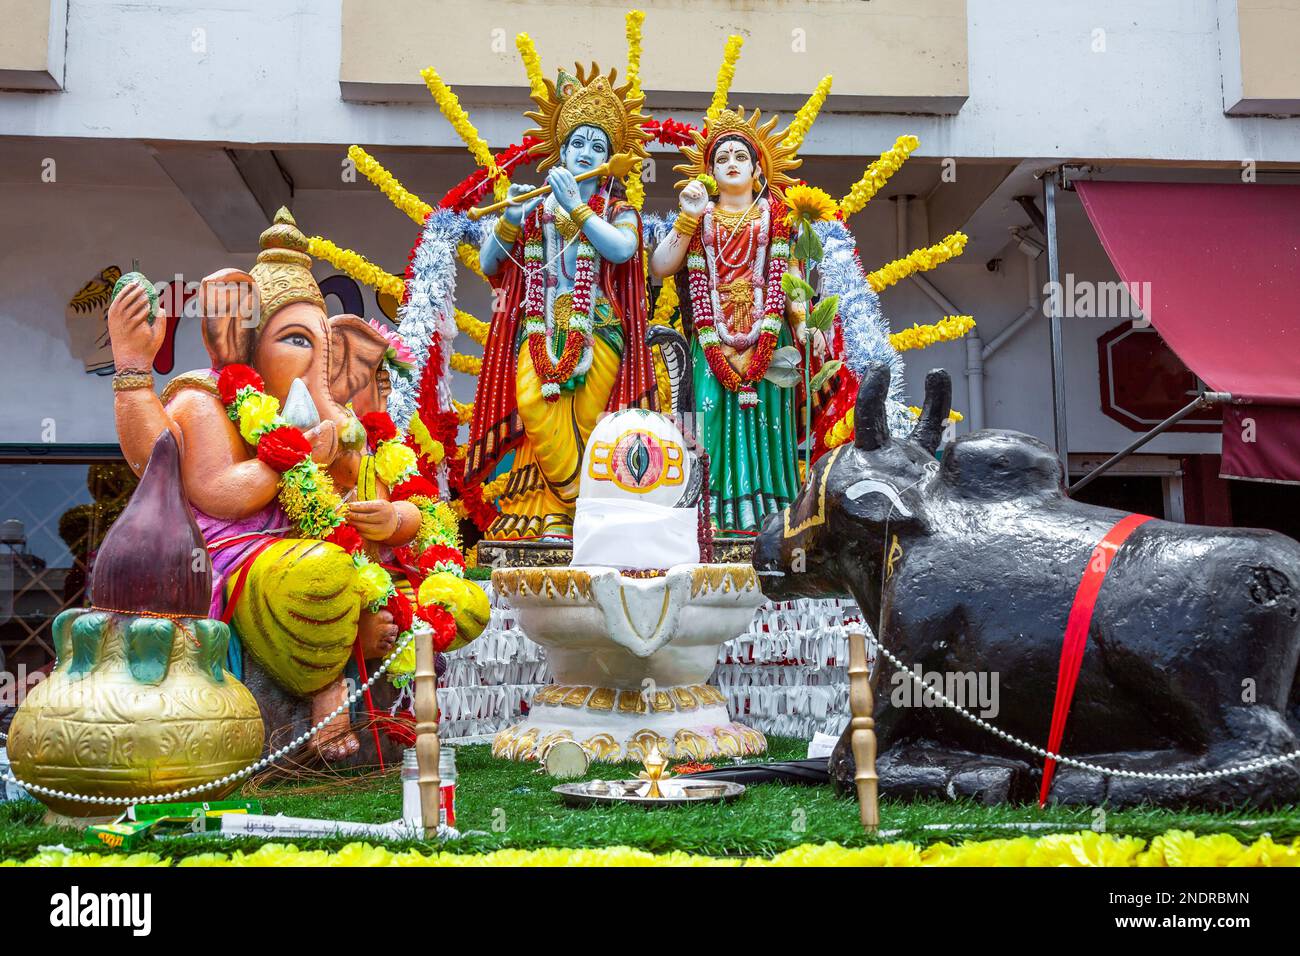 Statues de divinités hindoues pendant le festival de Mahashivratree à Maurice. Banque D'Images